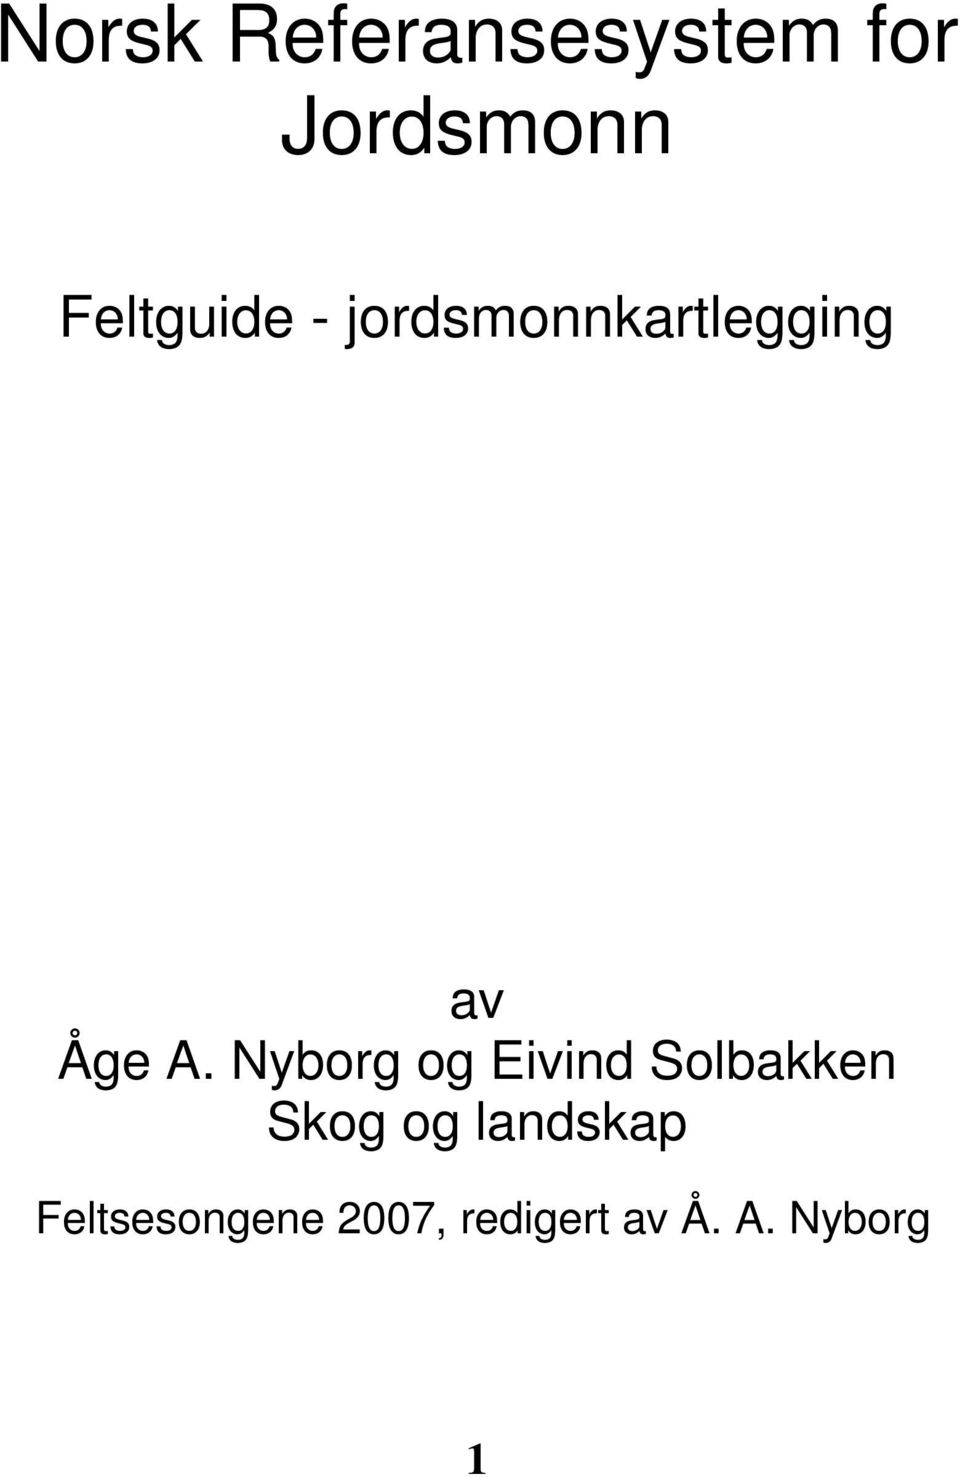 Nyborg og Eivind Solbakken Skog og